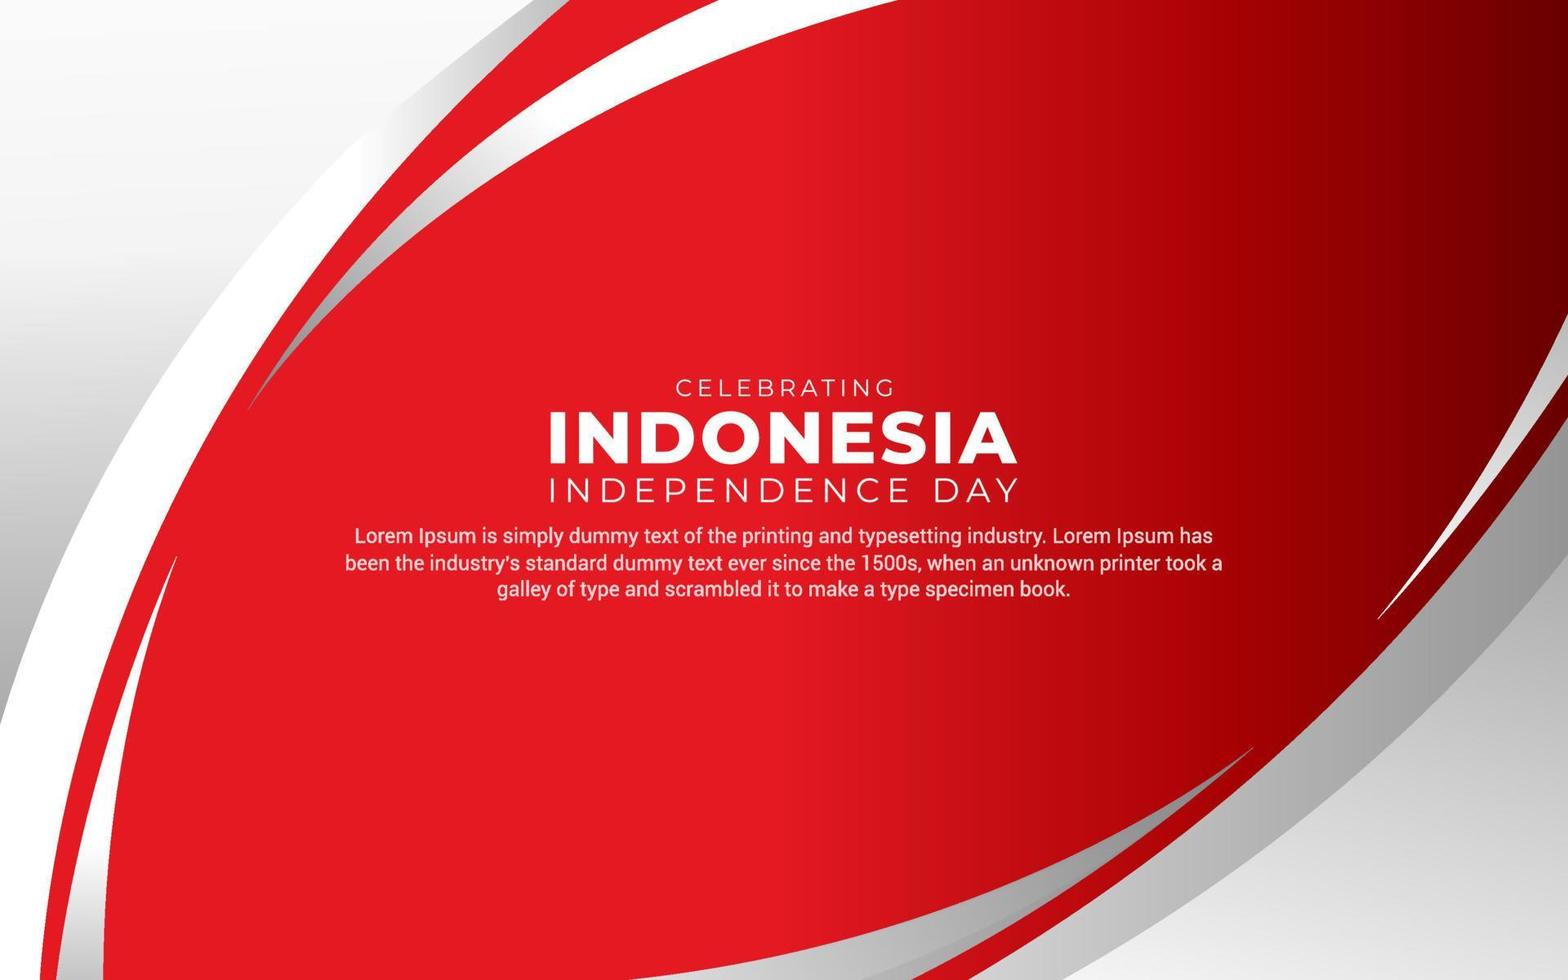 Thiết kế Ngày Độc Lập Indonesia hiện đại: Để đáp ứng nhu cầu của khách hàng hiện đại, thiết kế Ngày Độc Lập Indonesia luôn được cập nhật theo xu hướng mới nhất. Với những ý tưởng sáng tạo và phong cách thiết kế hiện đại, chắc chắn sẽ mang đến cho khách hàng những trải nghiệm thú vị nhất. Hãy khám phá những mẫu thiết kế đặc sắc nhất tại đây!